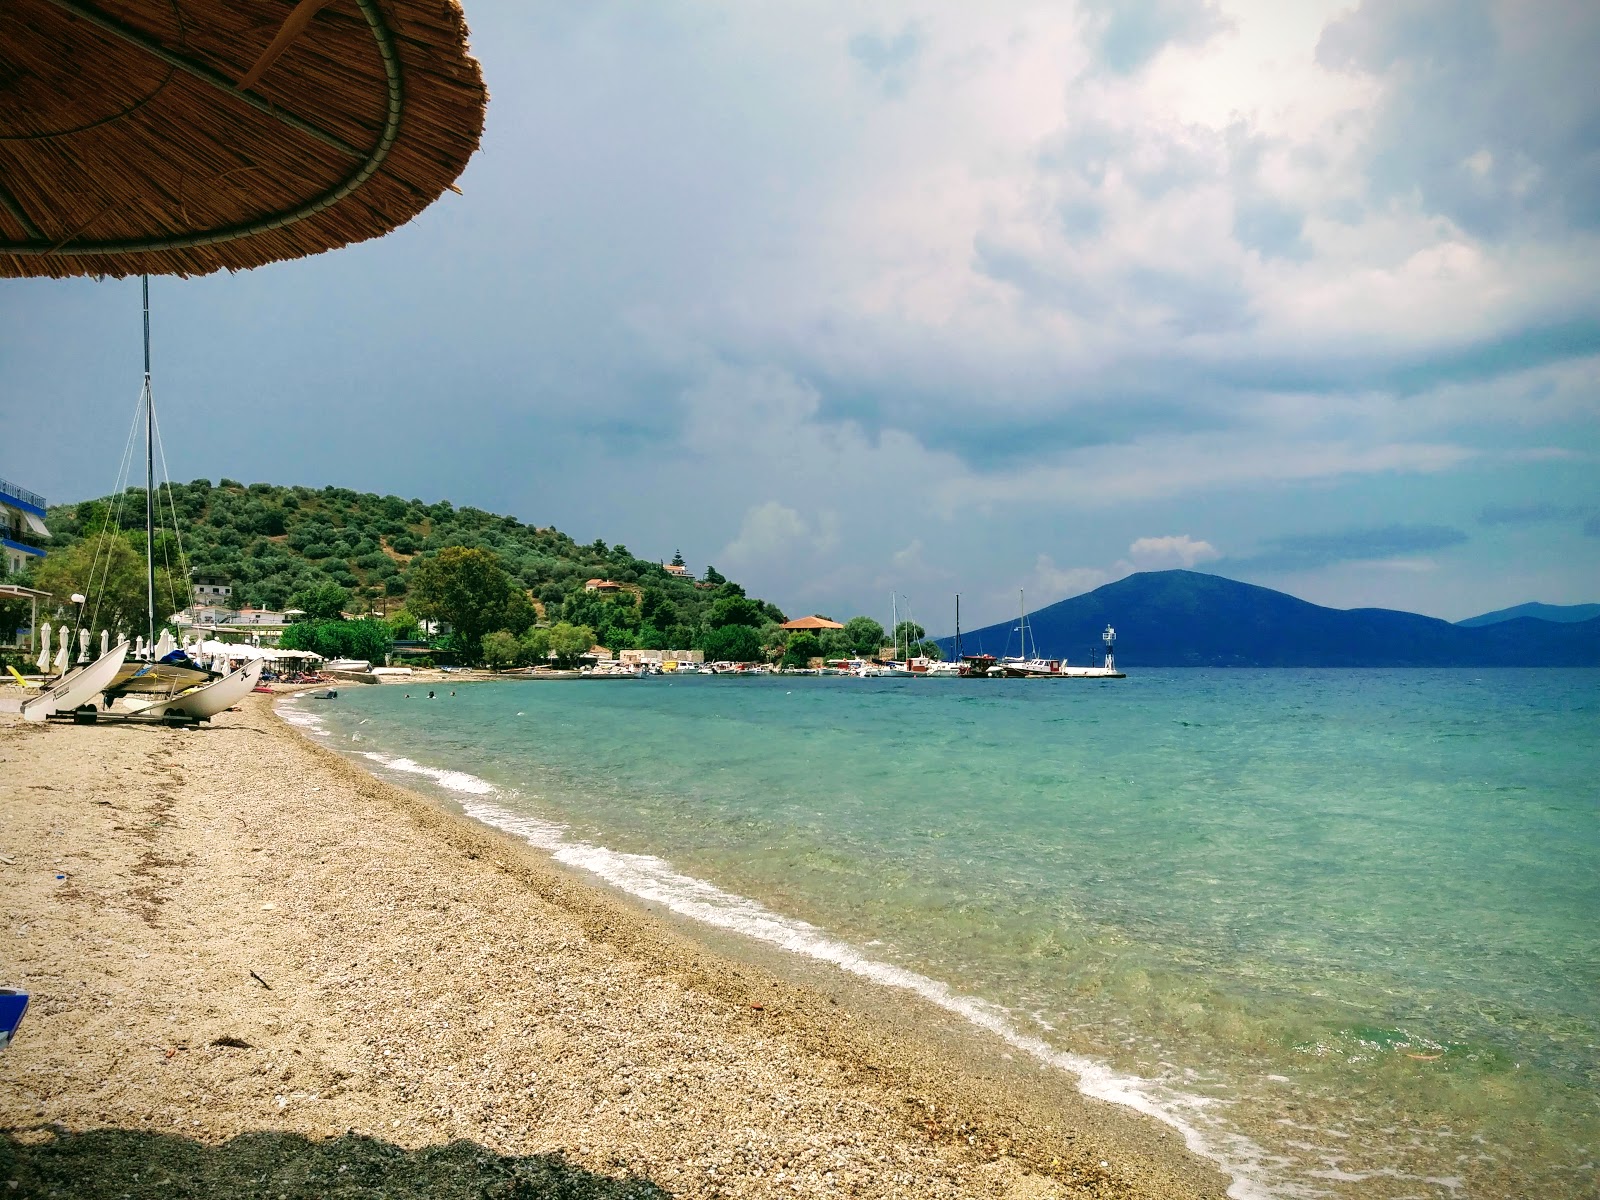 Neos Pirgos beach'in fotoğrafı hafif ince çakıl taş yüzey ile